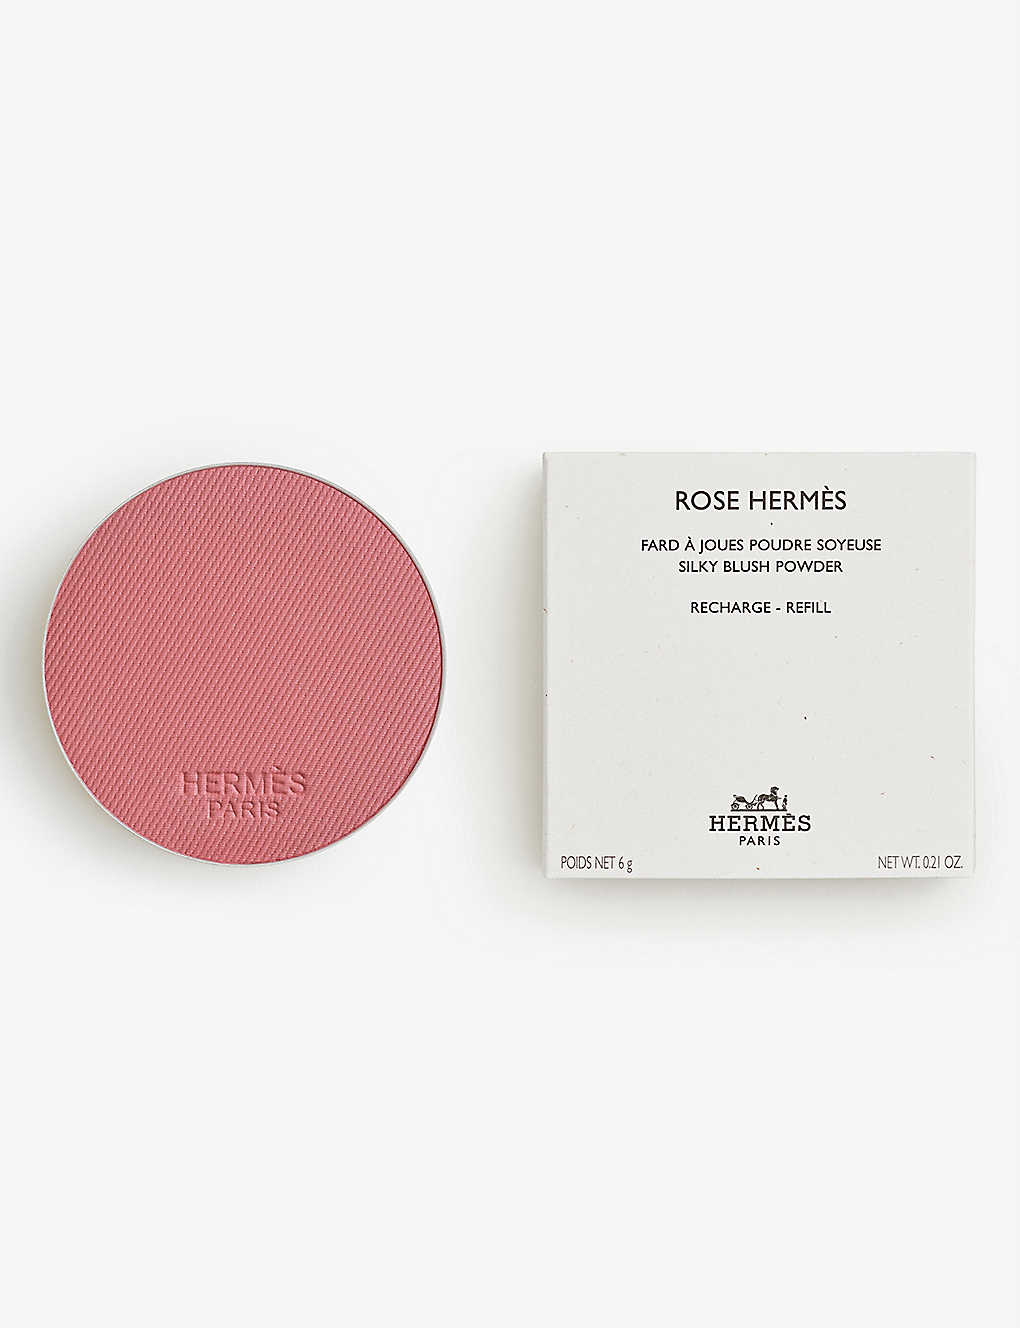 Hermes Rose Hermès Silky Blush Refill 6g In 54 Rose Nuit